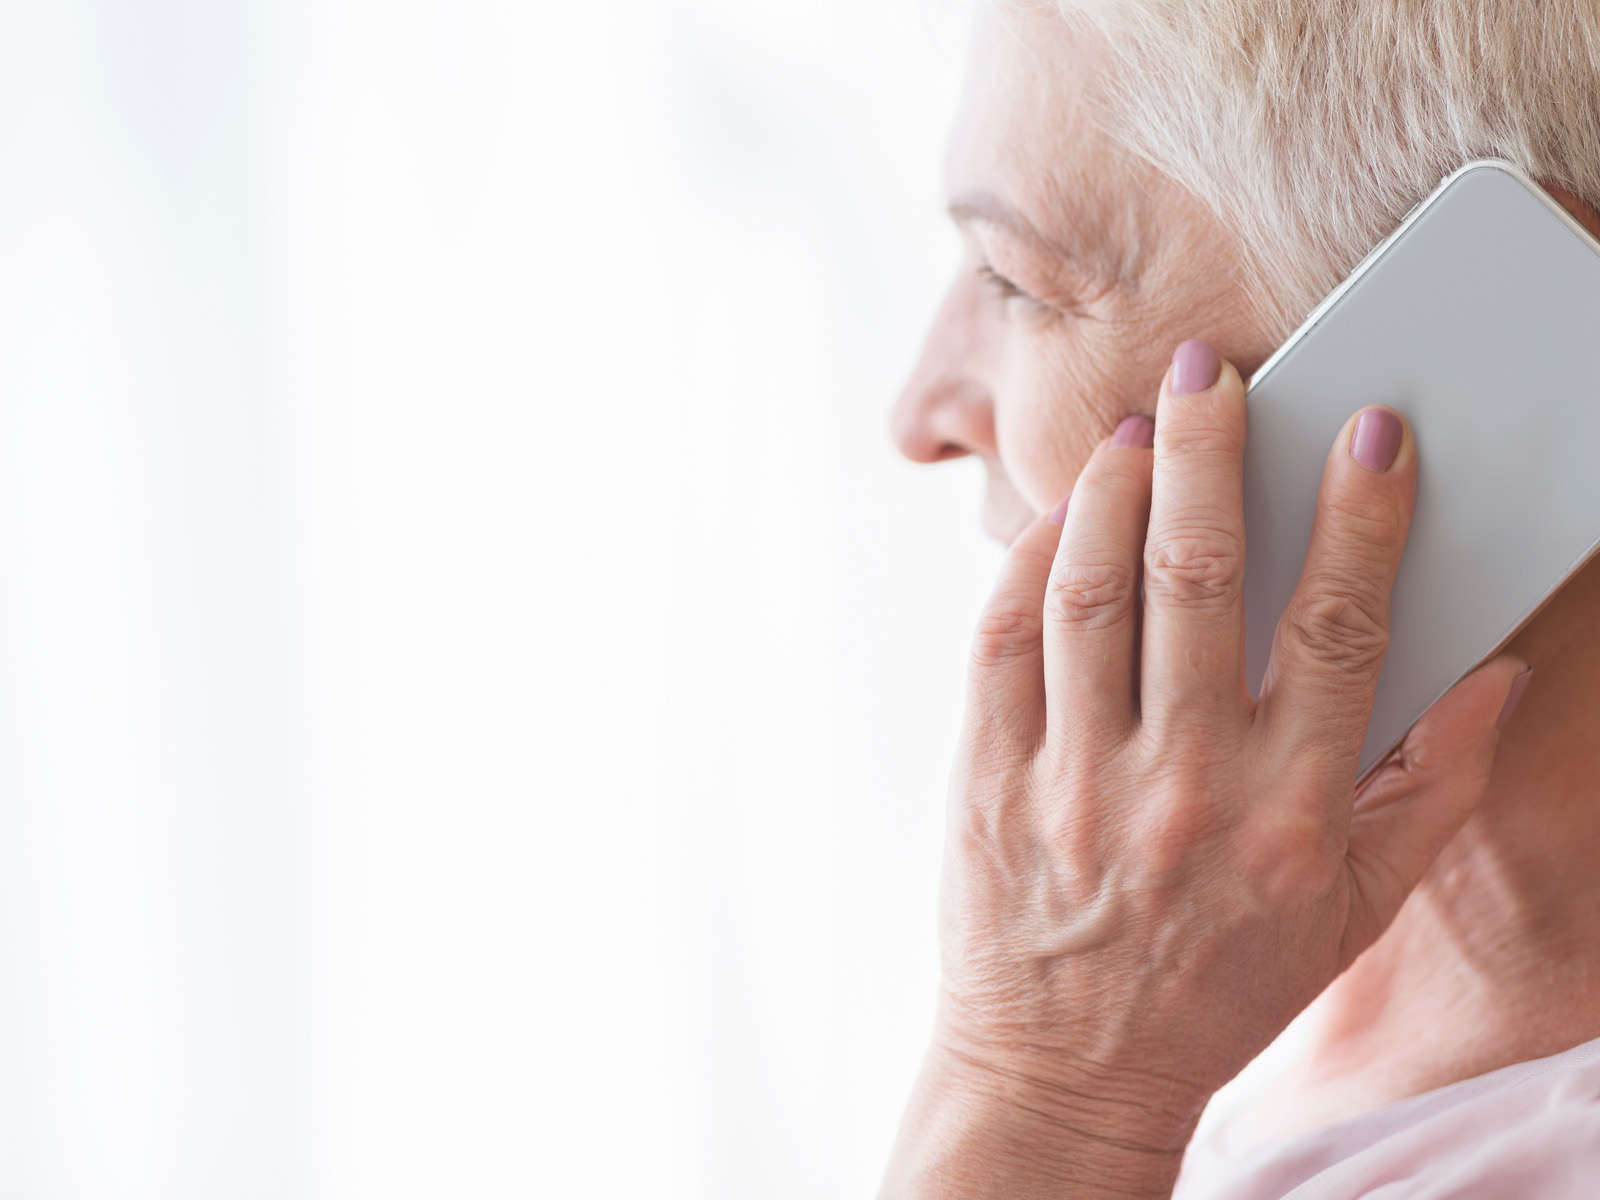 Das Bild zum Beitrag über den Enkeltrick zeigt eine ältere Dame mit grauweißen Haaren im Profil, die sich mit der linken Hand ein weißes Smartphone ans Ohr hält.